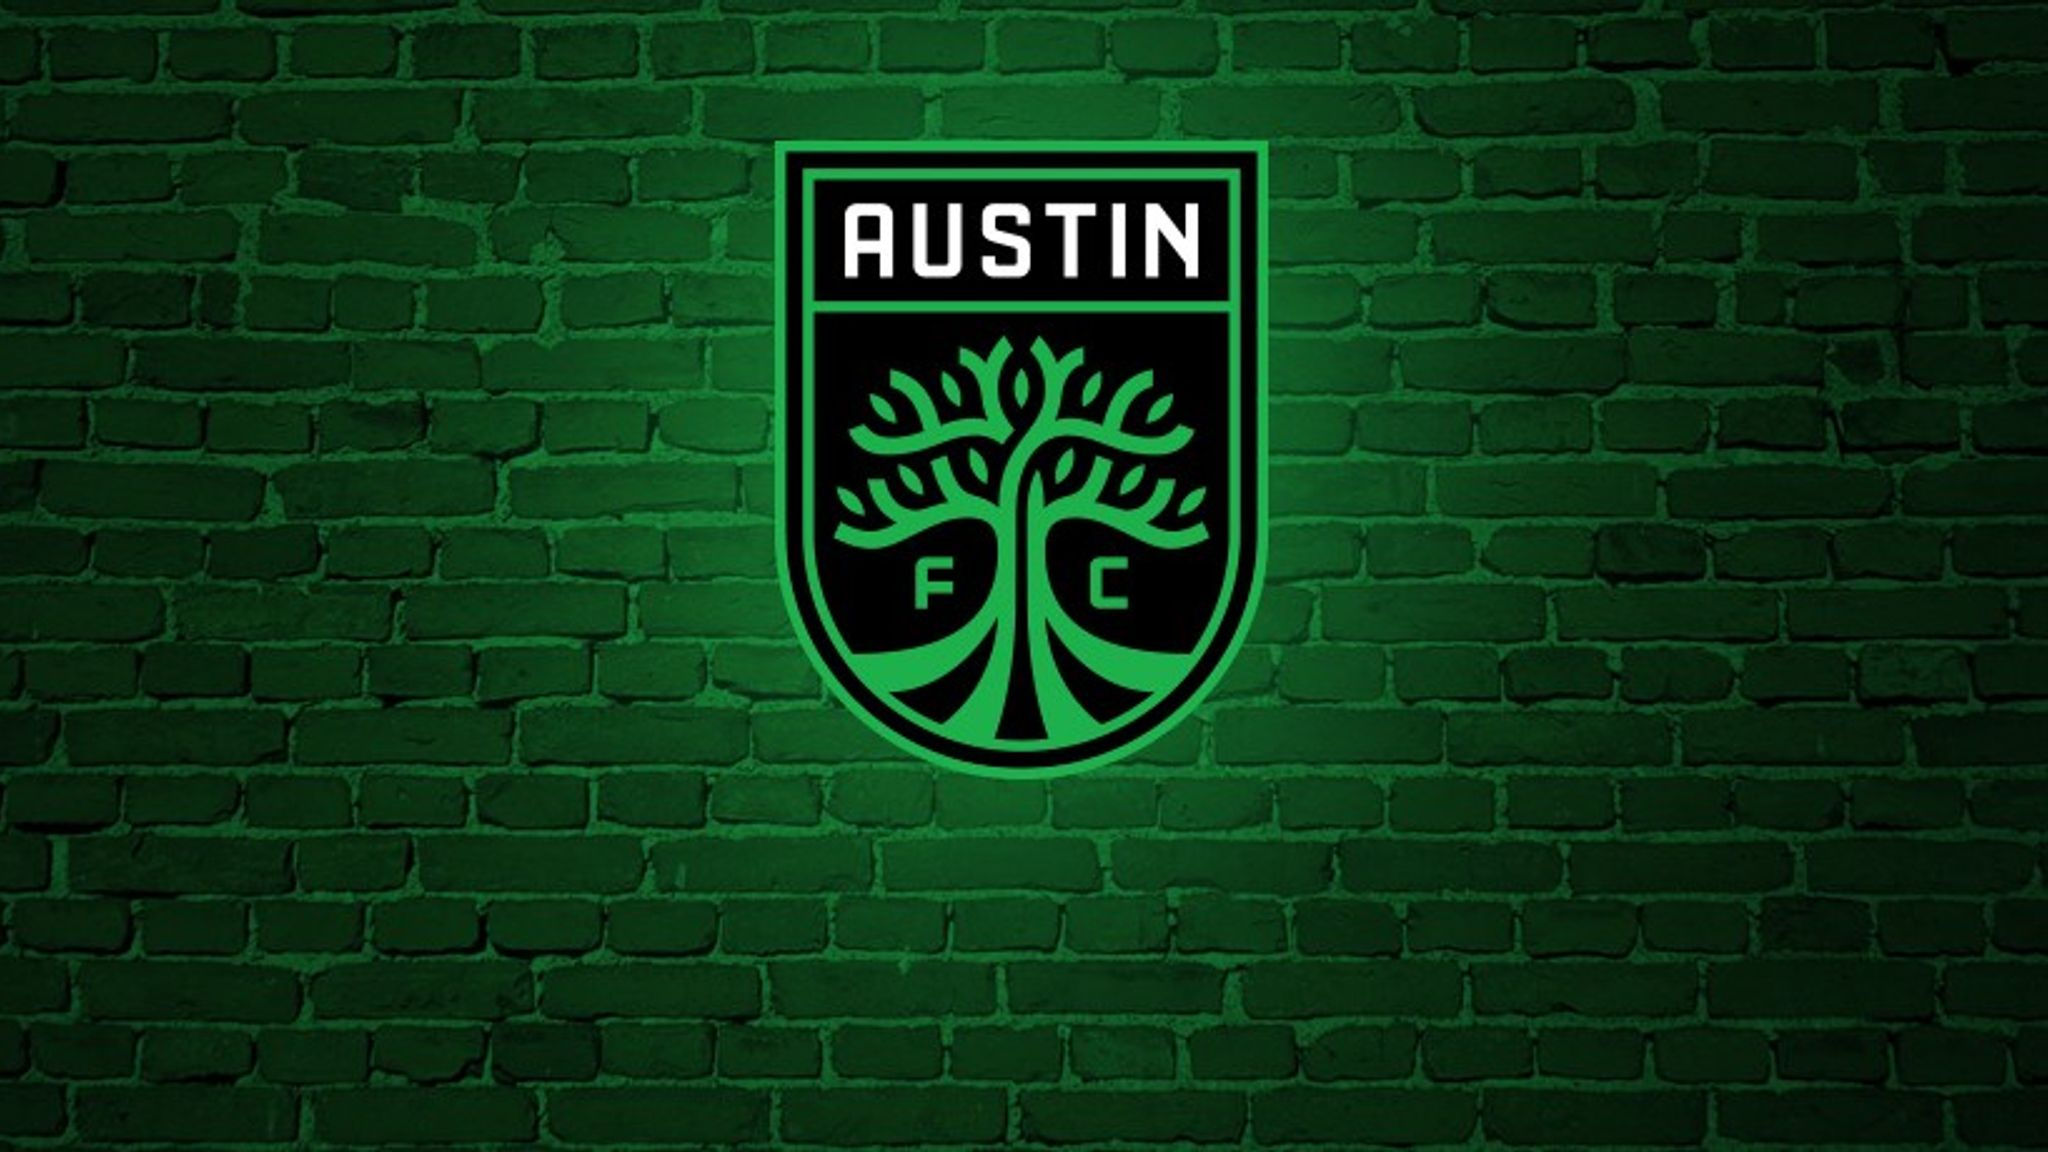 Austin FC to join Major League Soccer for 2021 season Football News